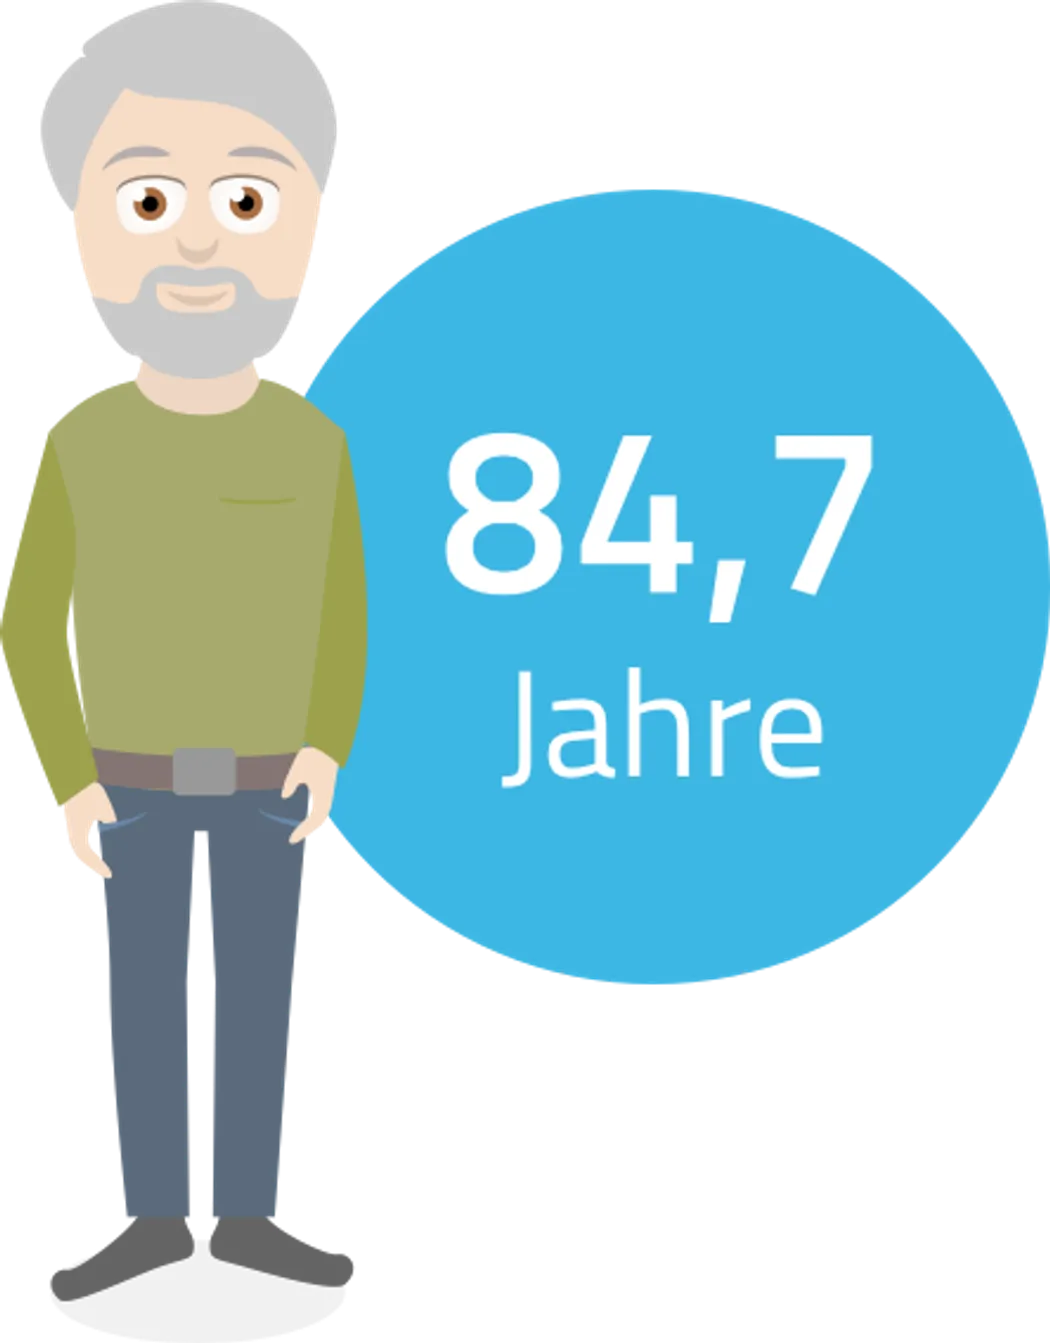 Altersvorsorge - Männer werden in Deutschland durchschnittlich 84,7 Jahre alt.